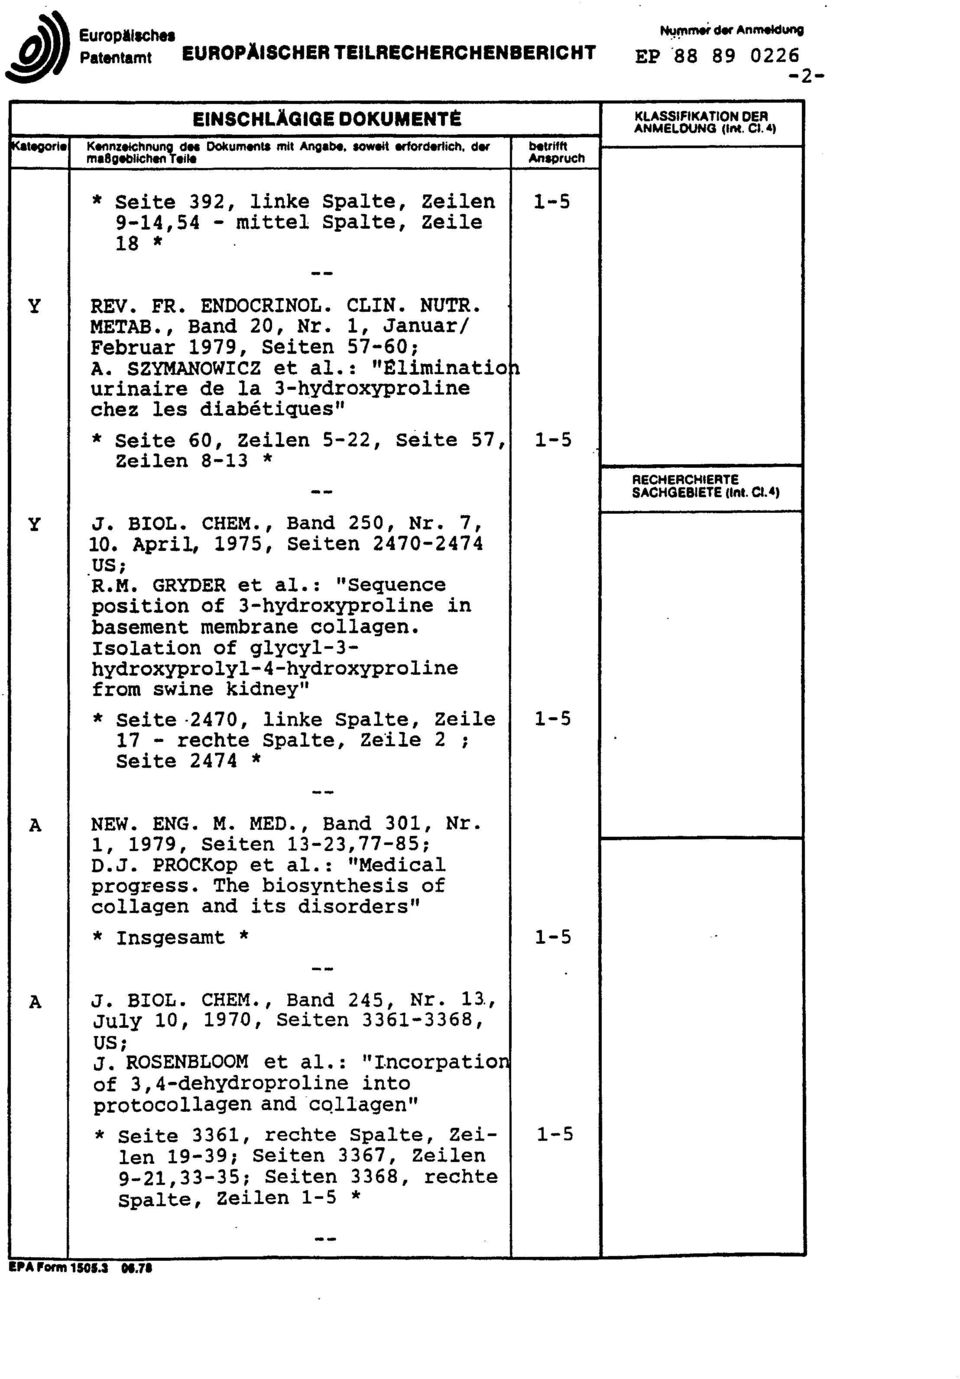 : "Eliminatio \ urinaire de la 3-hydroxyproline chez les diabetiques" * Seite 60, Zeilen 5-22, Seite 57, 1-5 Y J. BIOL. CHEM., Band 250, Nr. 7, 10. April, 1975, Seiten 2470-2474 US; R.M. GRYDER et al.